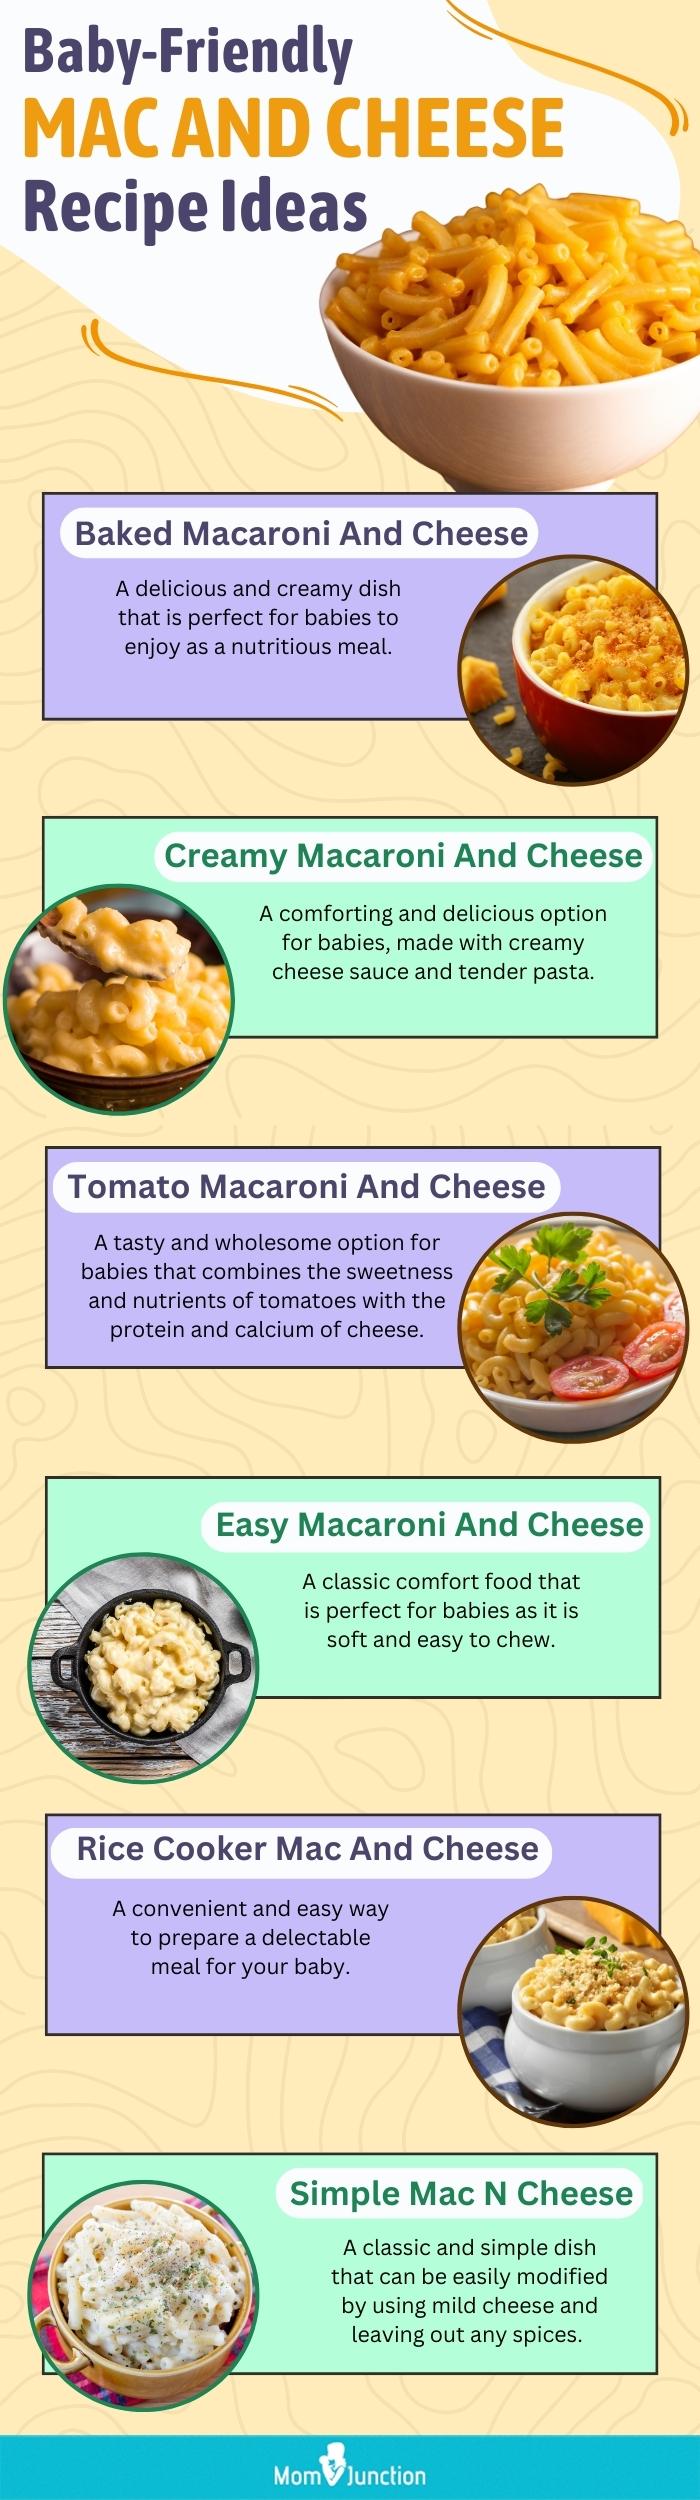 适合宝宝的MAC和奶酪食谱(信息图)